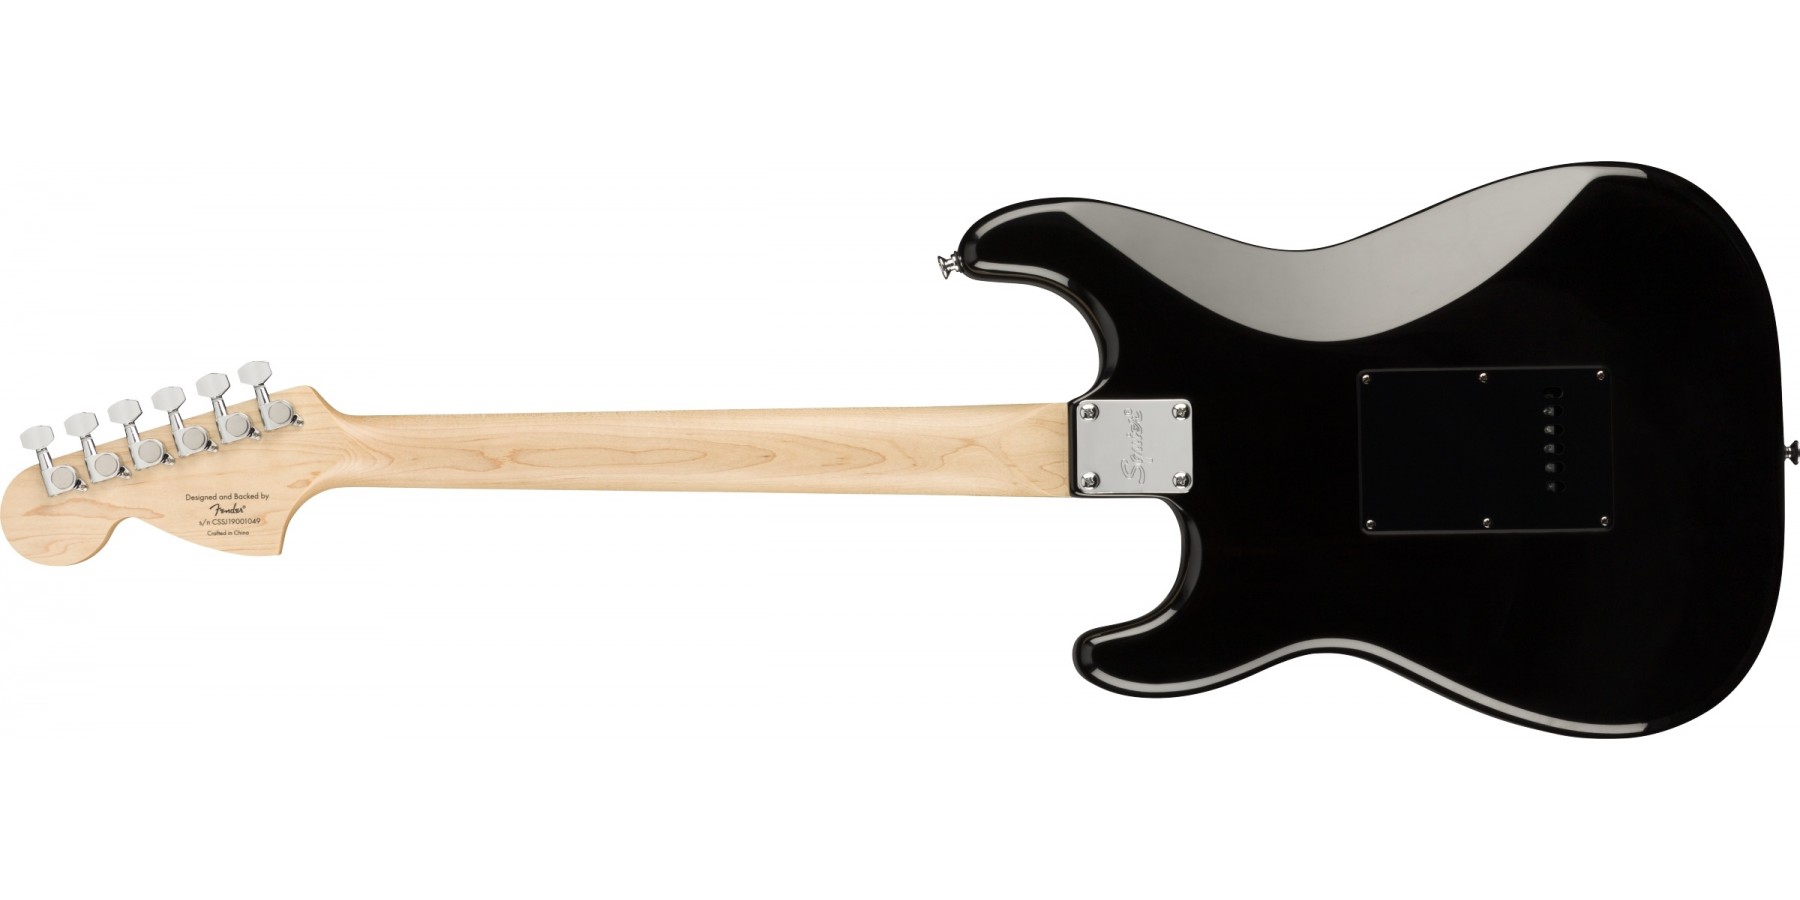 Squier Strat Affinity Black Pearl Pickguard Fsr Ltd Sss Trem Lau - Black - Guitarra eléctrica con forma de str. - Variation 1